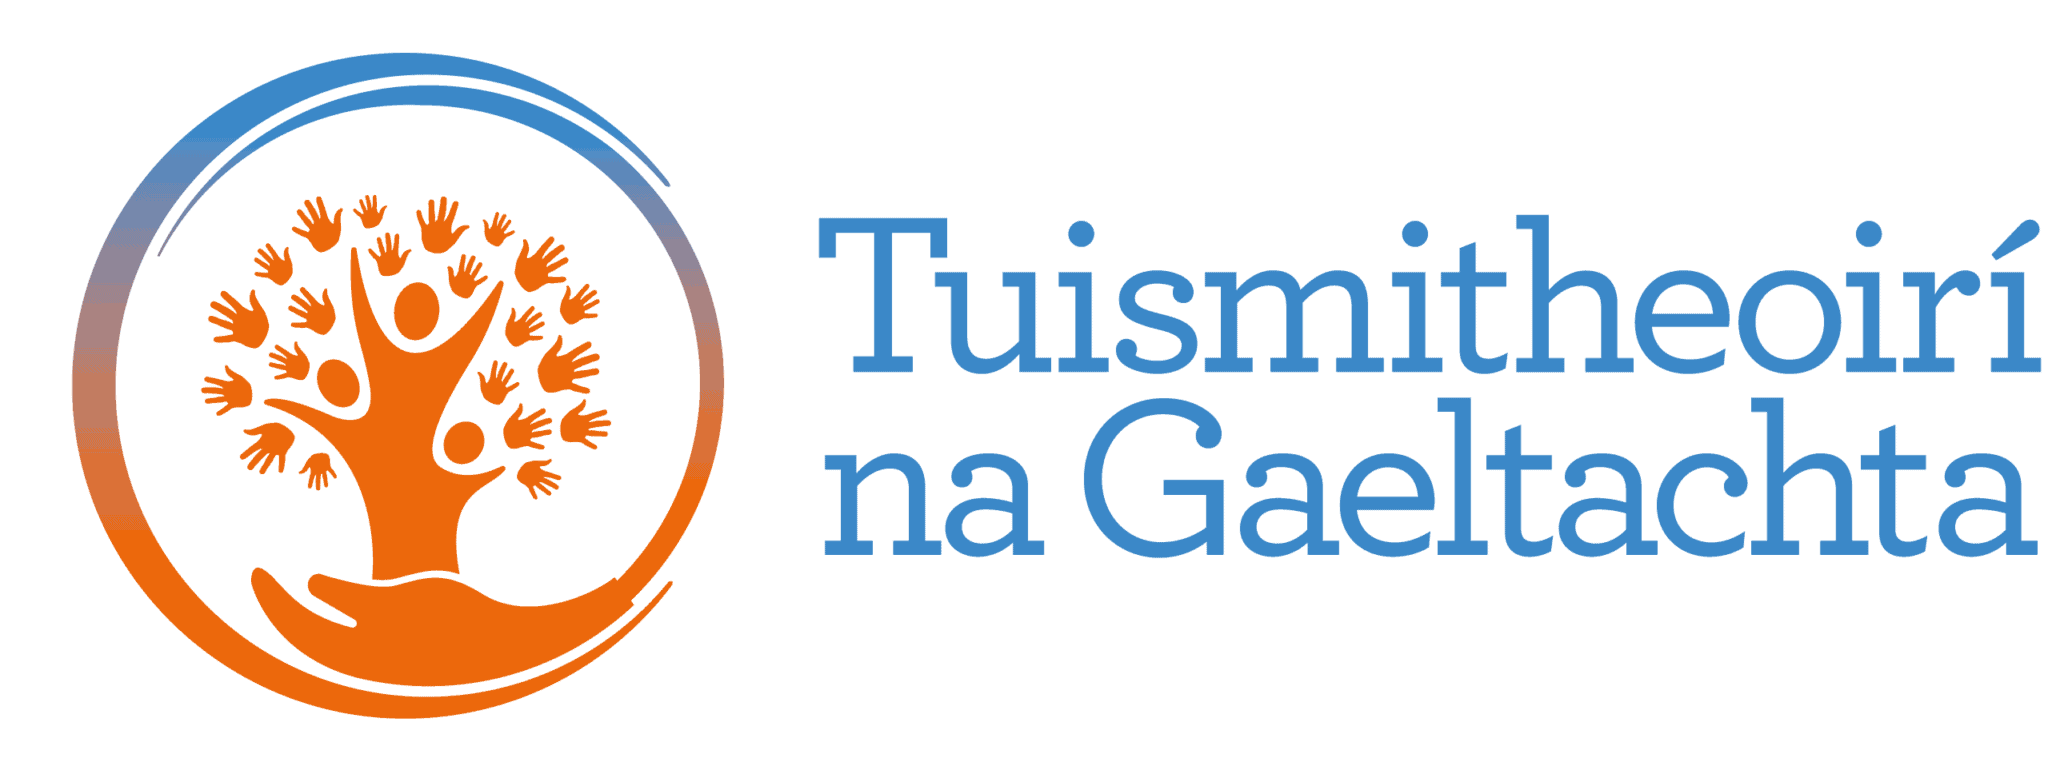 Tuismitheoirí na Gaeltachta